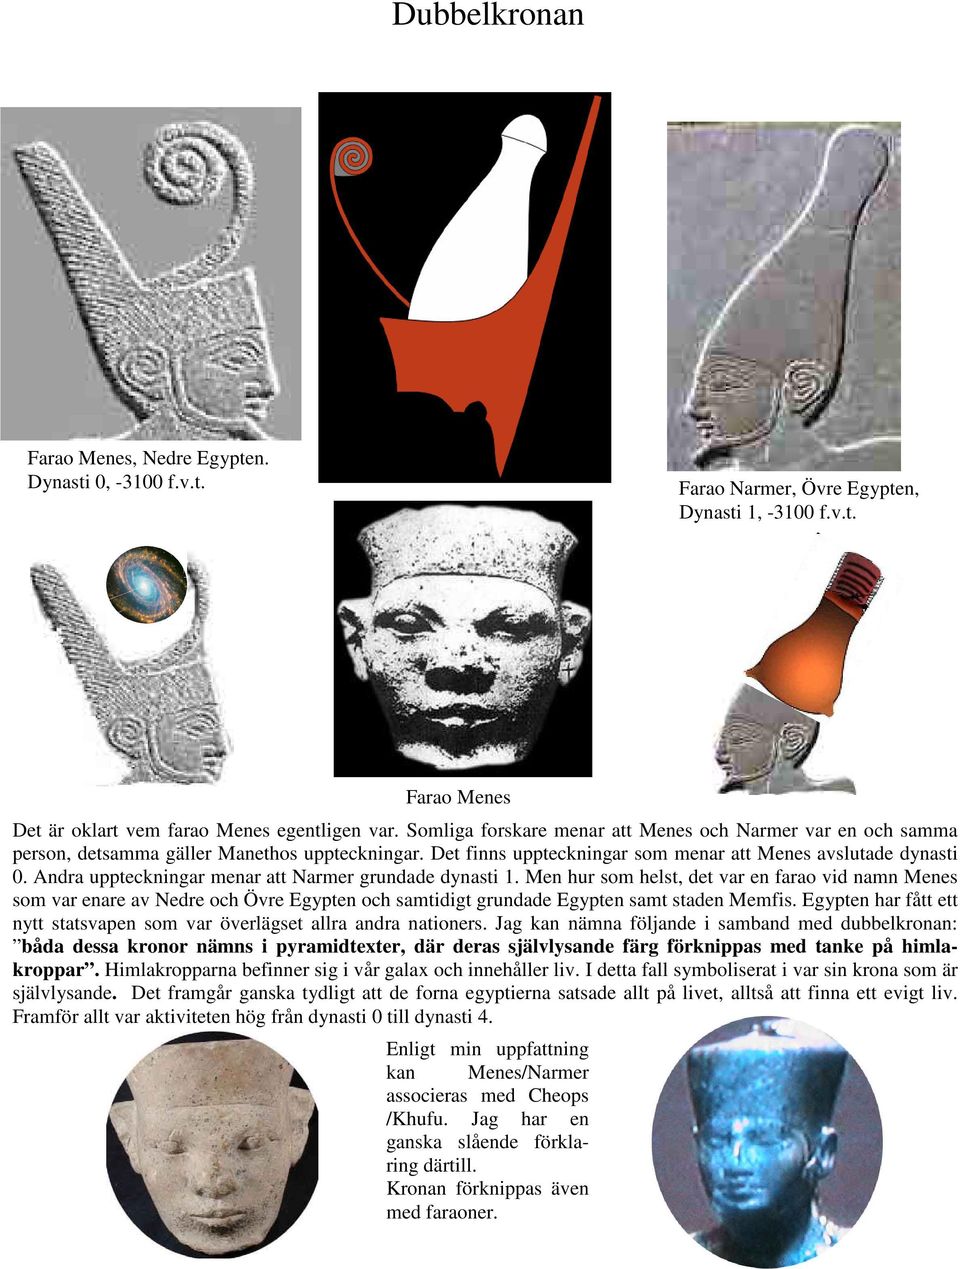 Andra uppteckningar menar att Narmer grundade dynasti 1. Men hur som helst, det var en farao vid namn Menes som var enare av Nedre och Övre Egypten och samtidigt grundade Egypten samt staden Memfis.